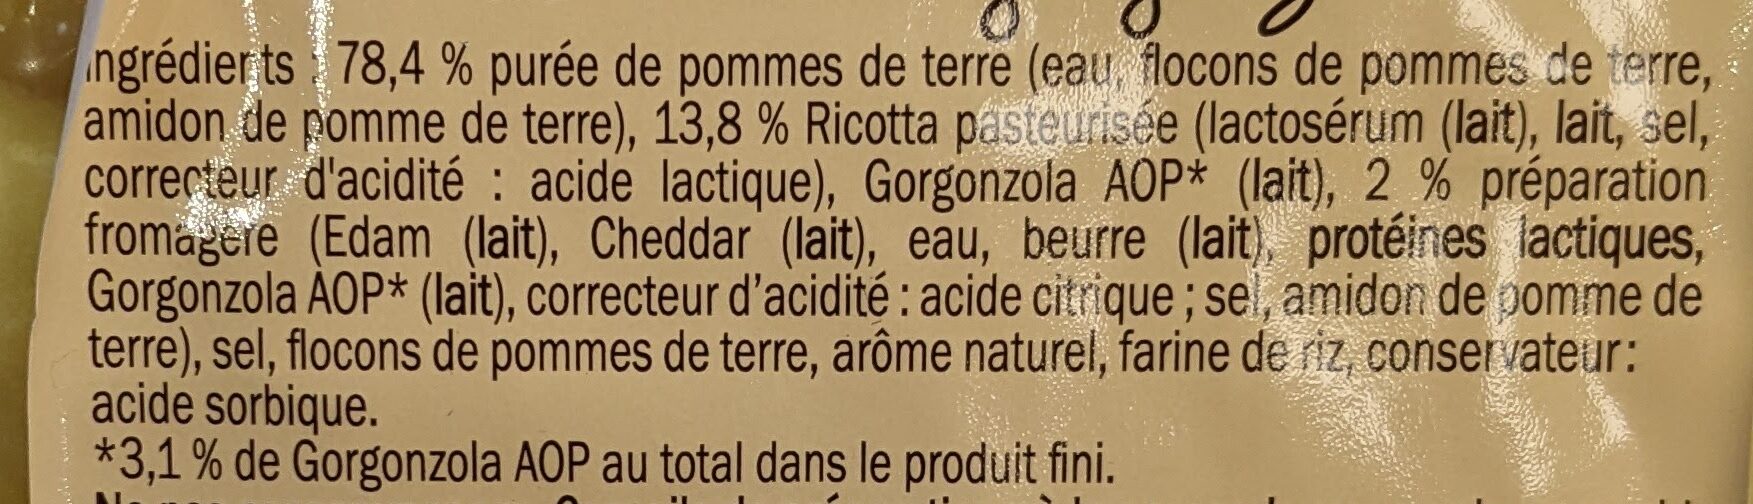 Gnocchi fourrés au gorgonzola DOP - Ingrédients